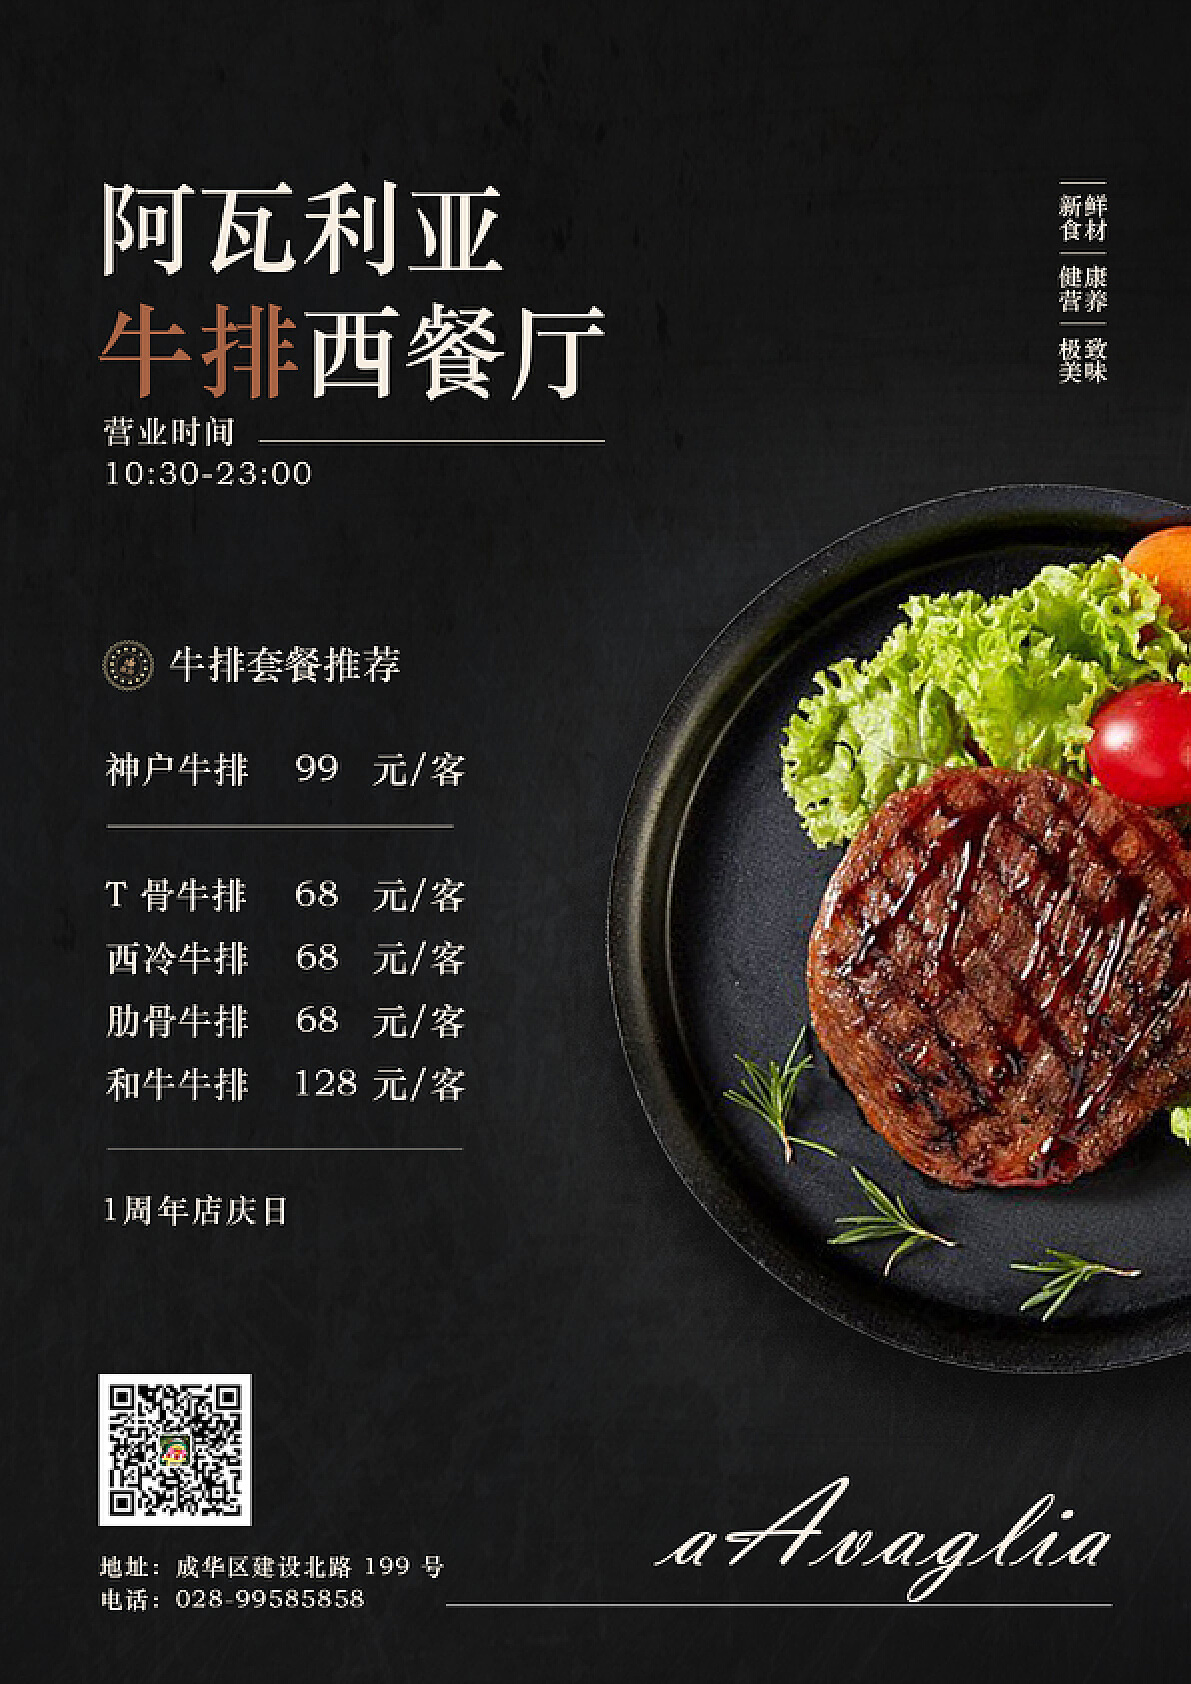 在北京最时尚的西餐厅里吃牛排是一种什么样的体验